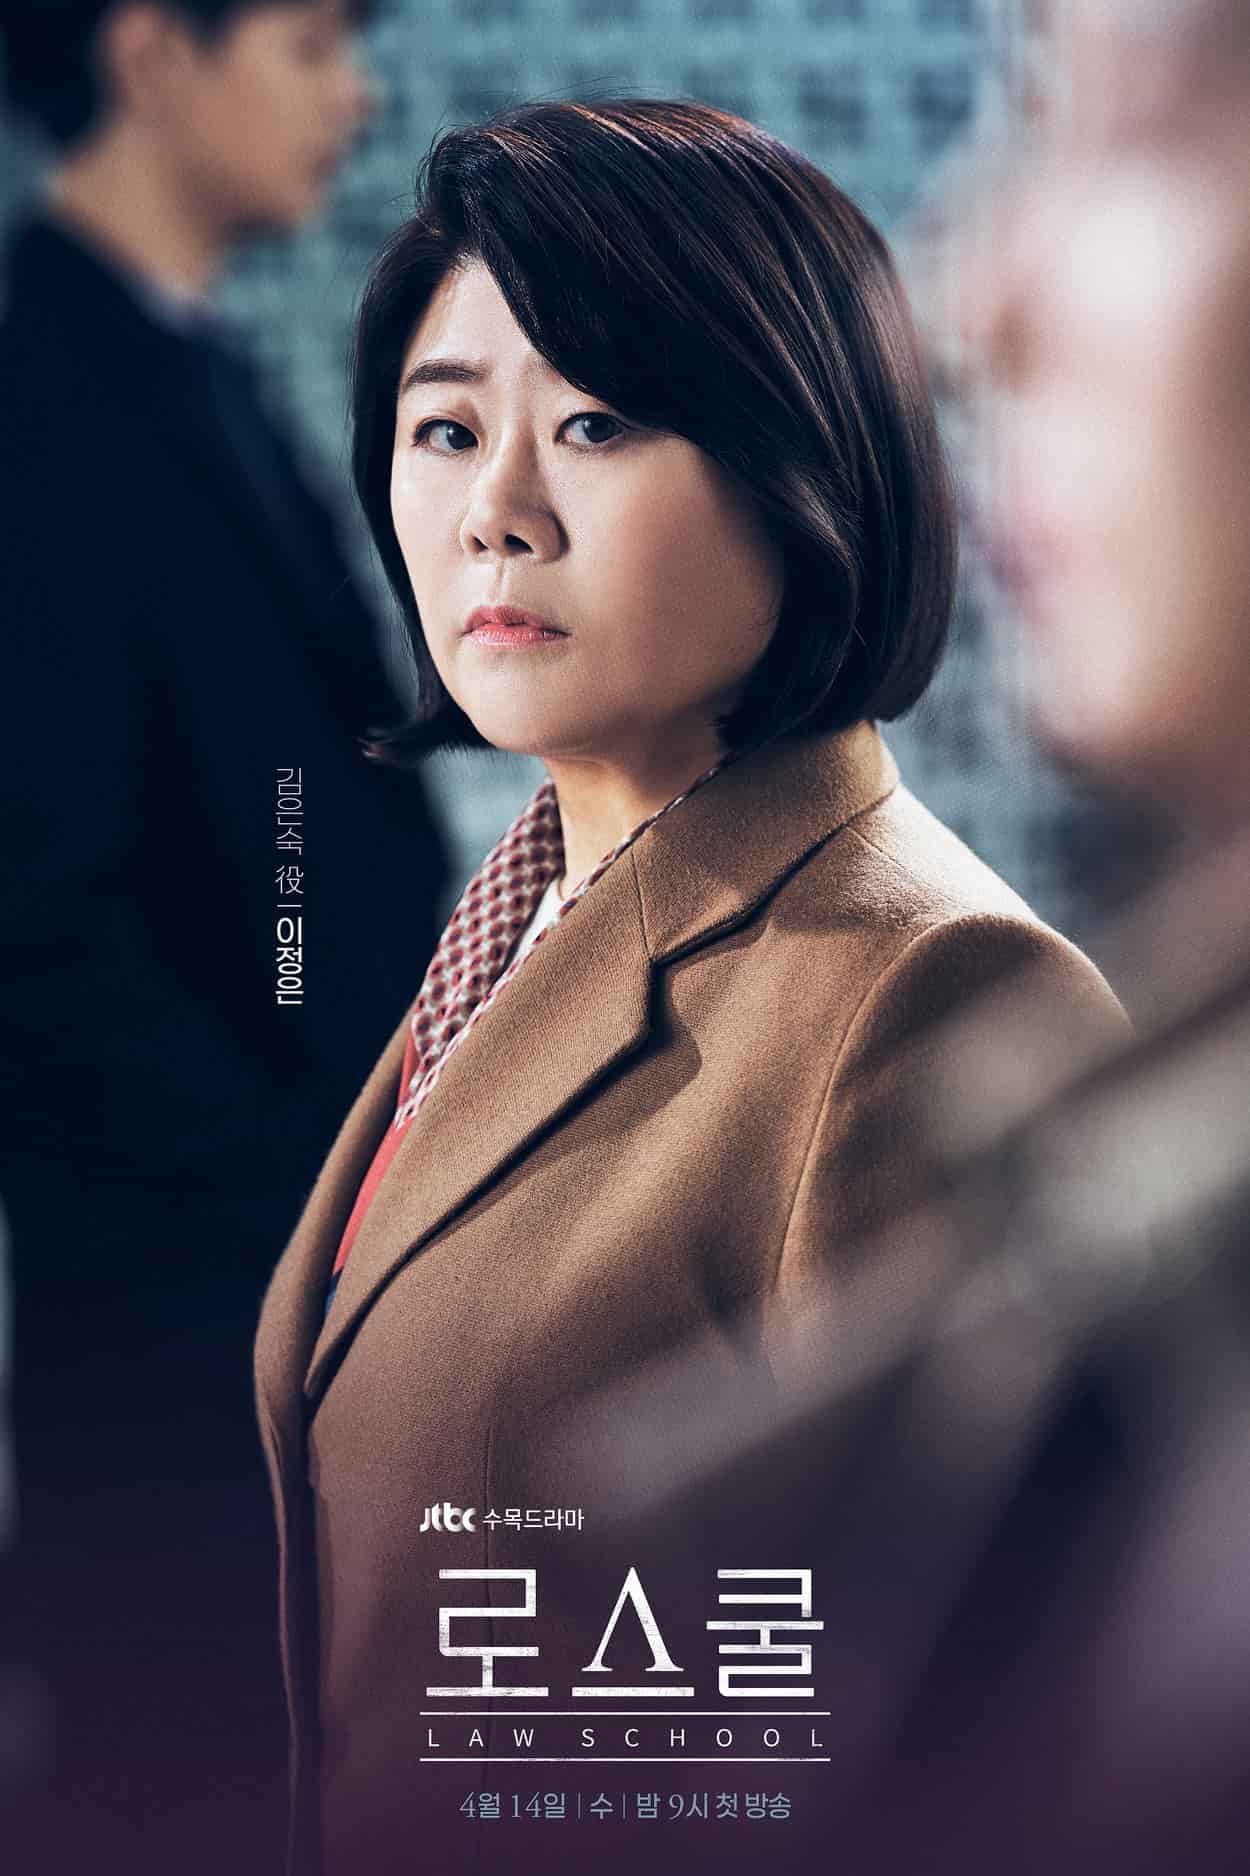 Lee Jung Eun as Kim Eun Sook